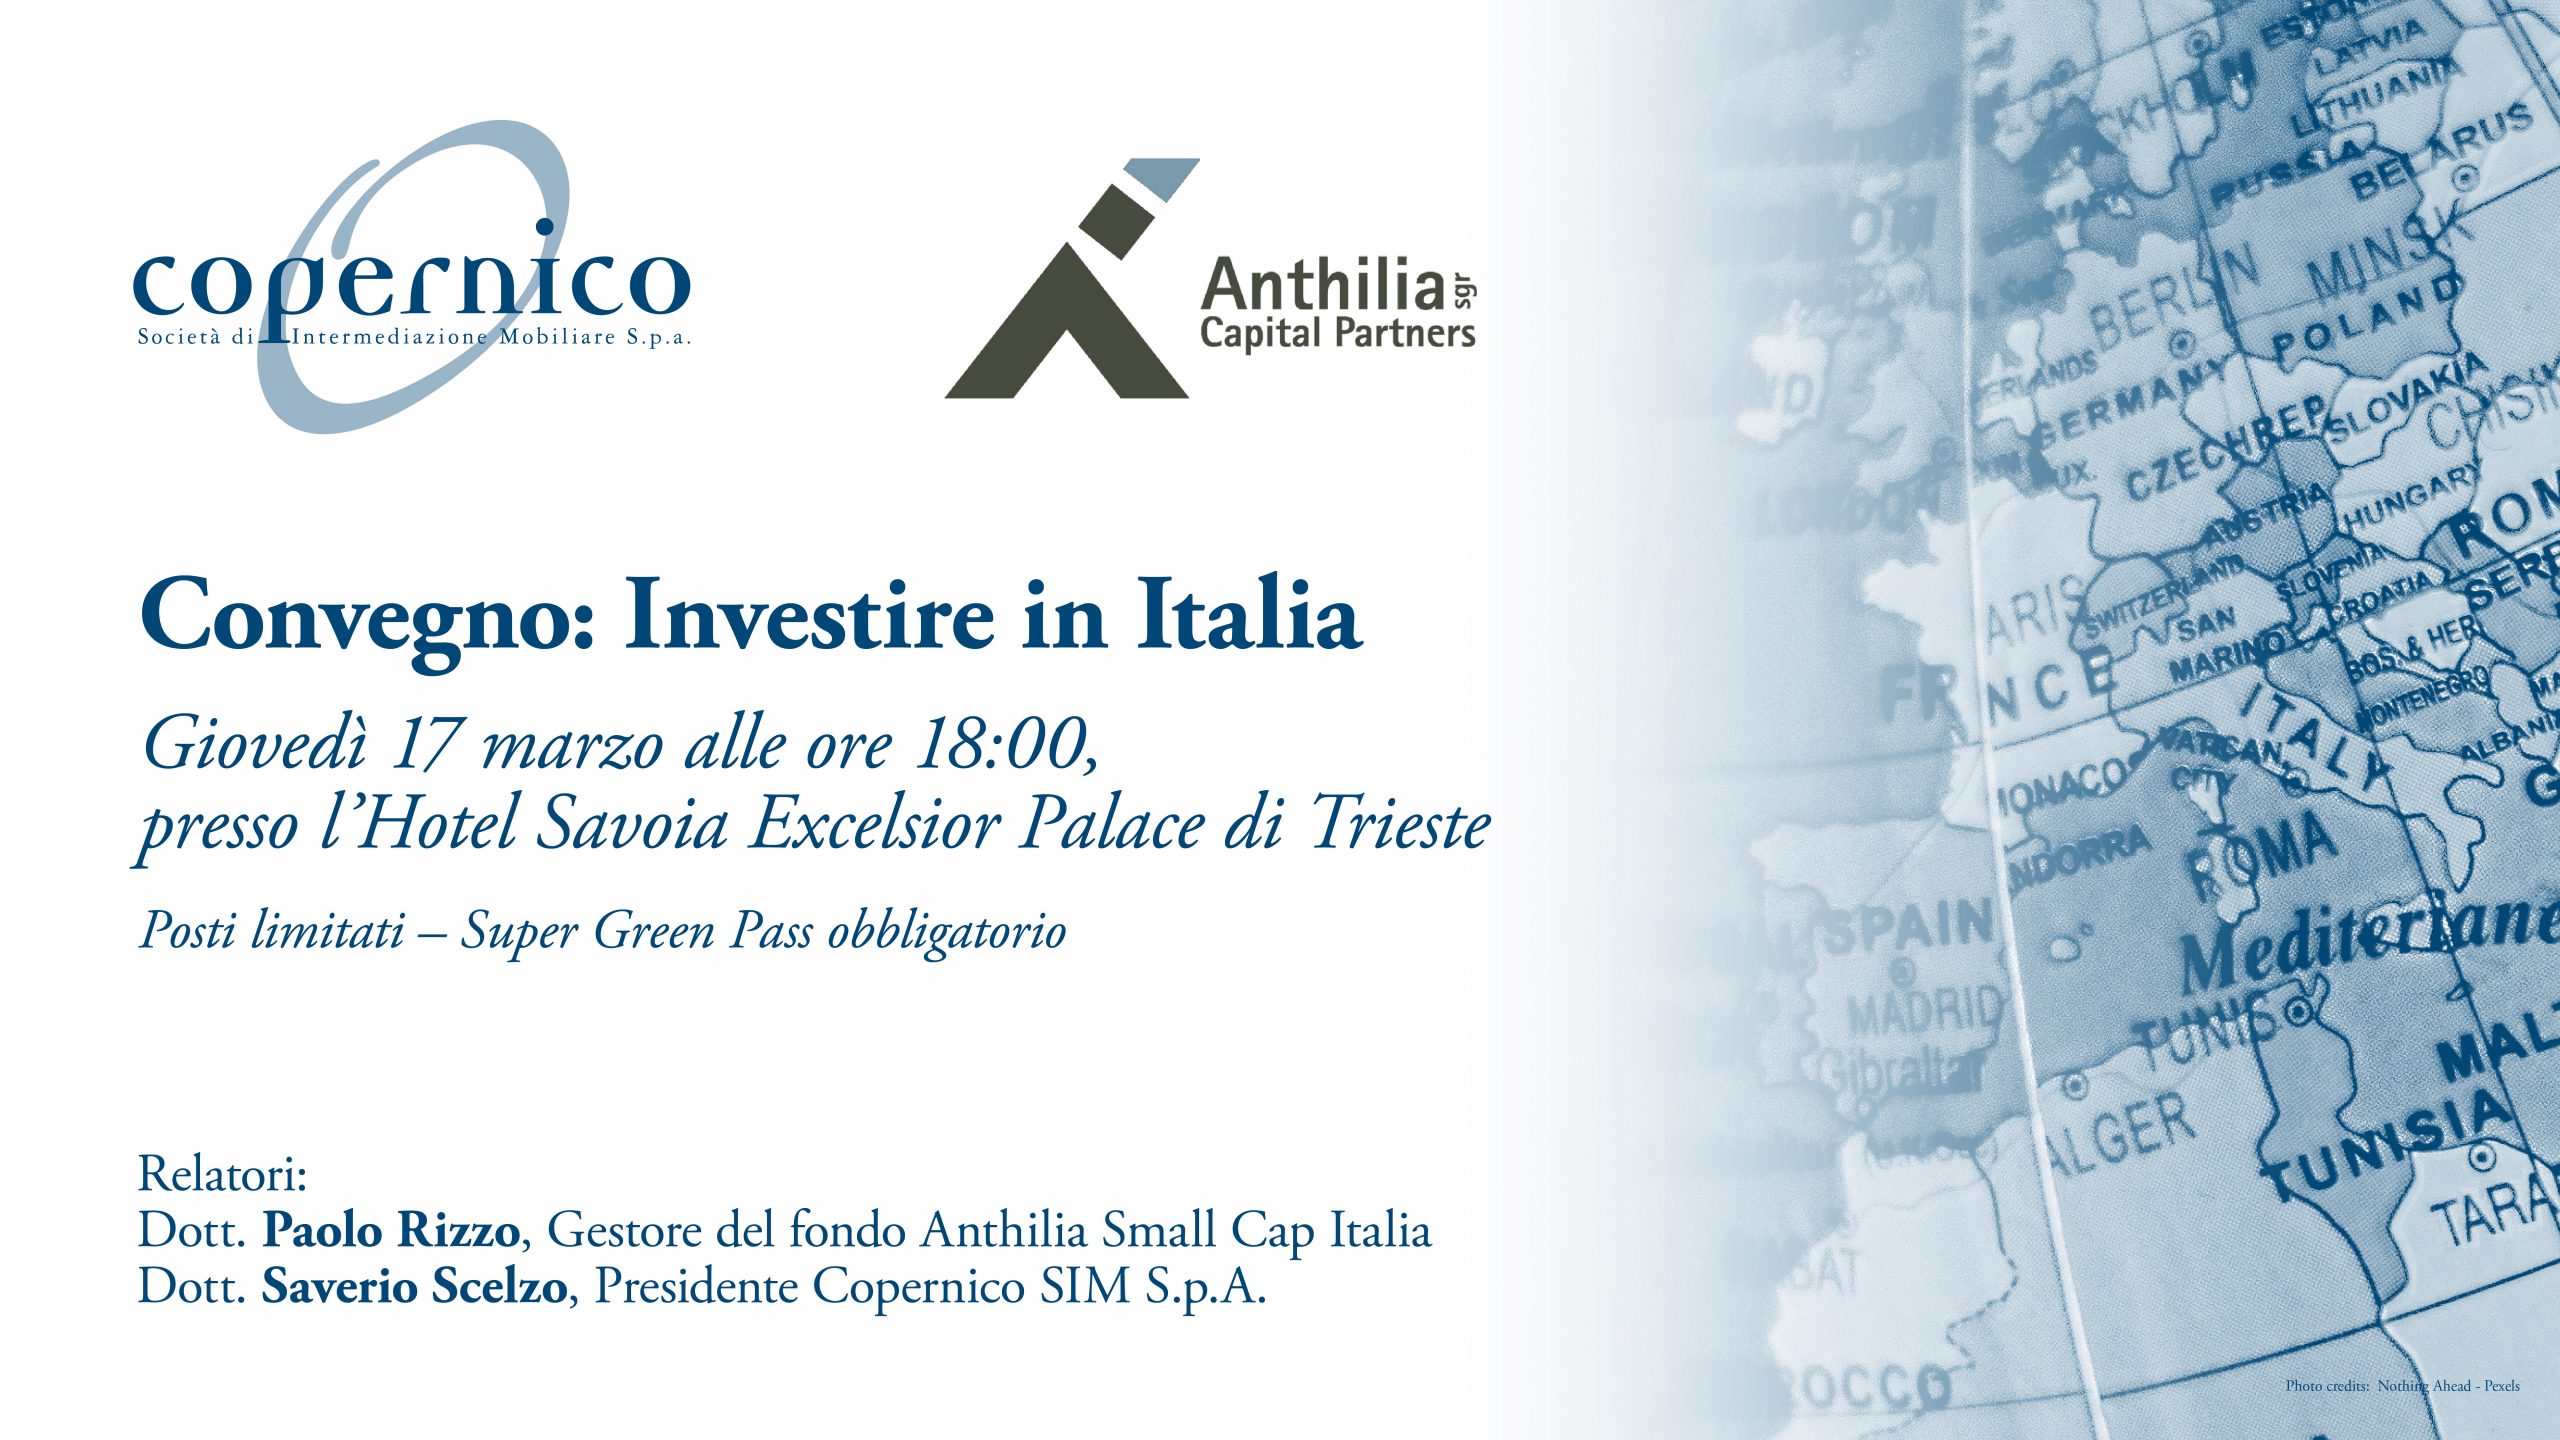 Convegno “Investire in Italia”